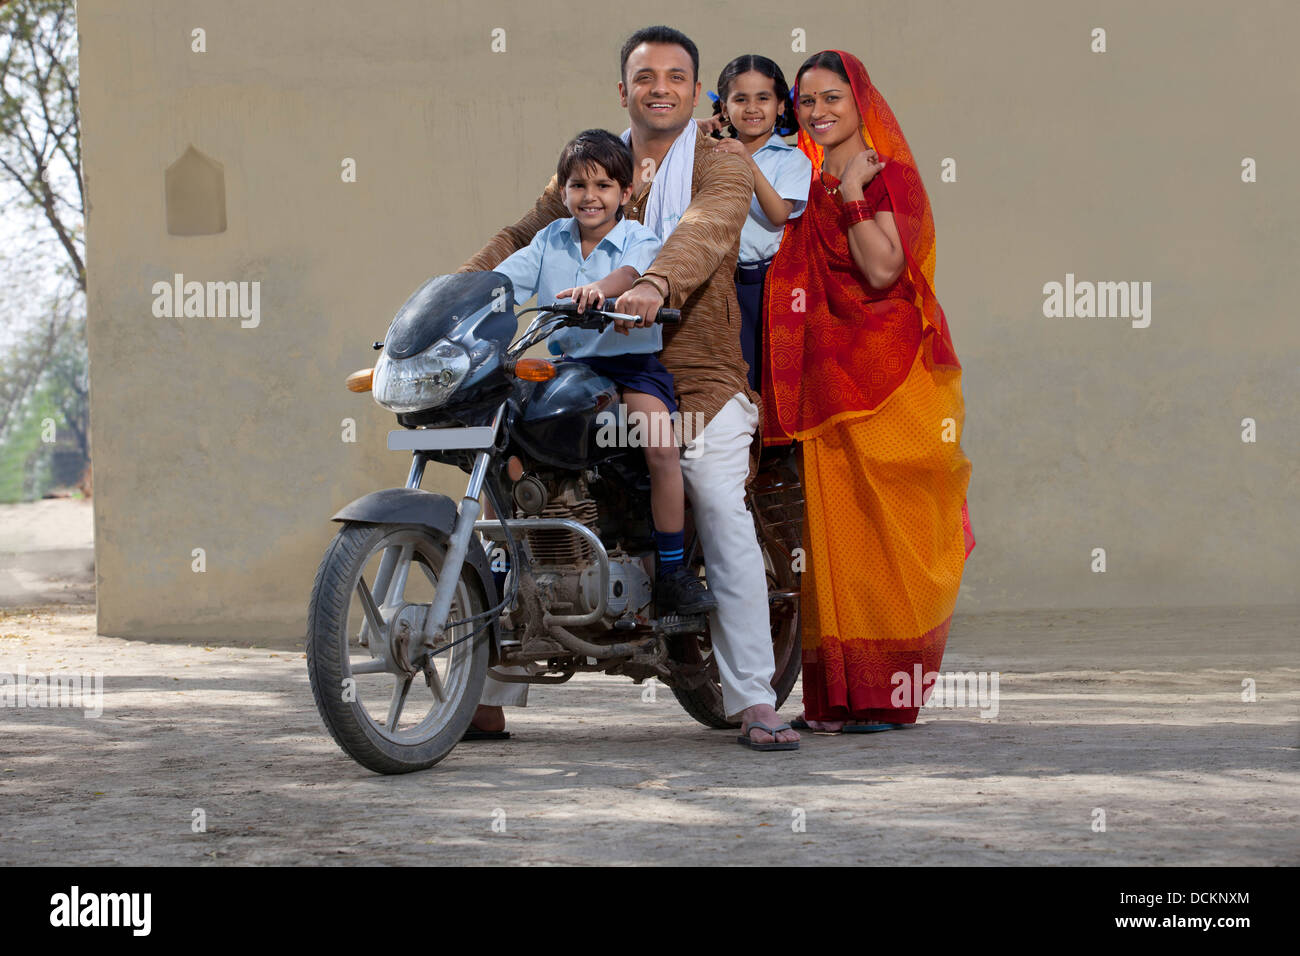 Portrait d'une famille indienne avec plaisir sur le vélo Banque D'Images